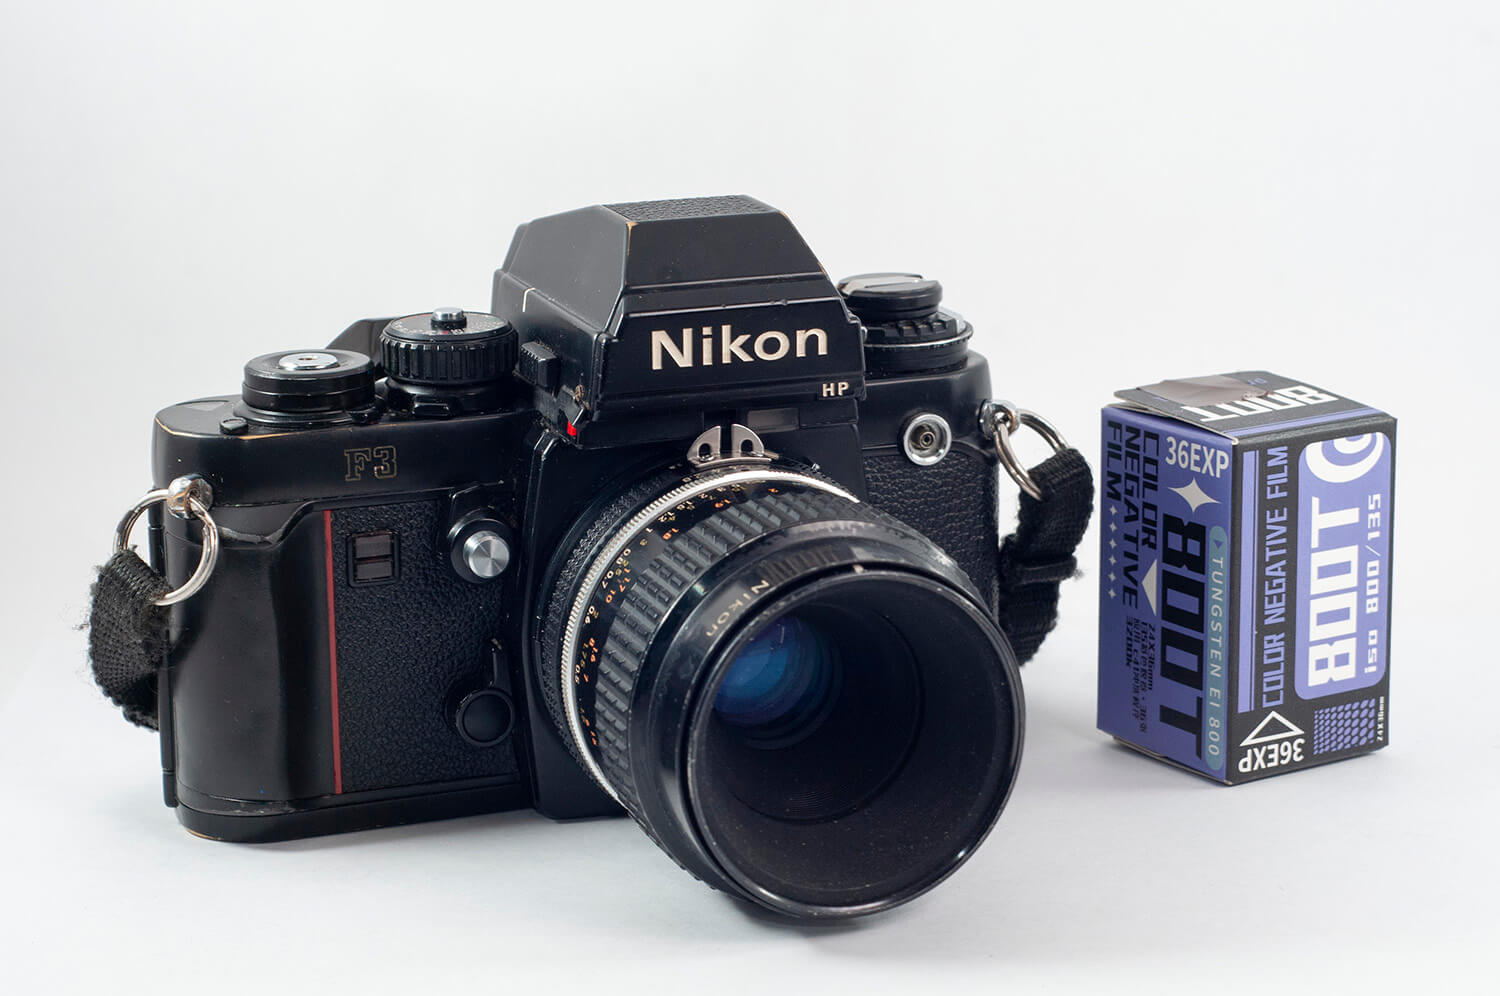 My roll of "Sinostill" 800T, Nikon F3 + Micro-Nikkor 55mm f/2.8,  Wenhong